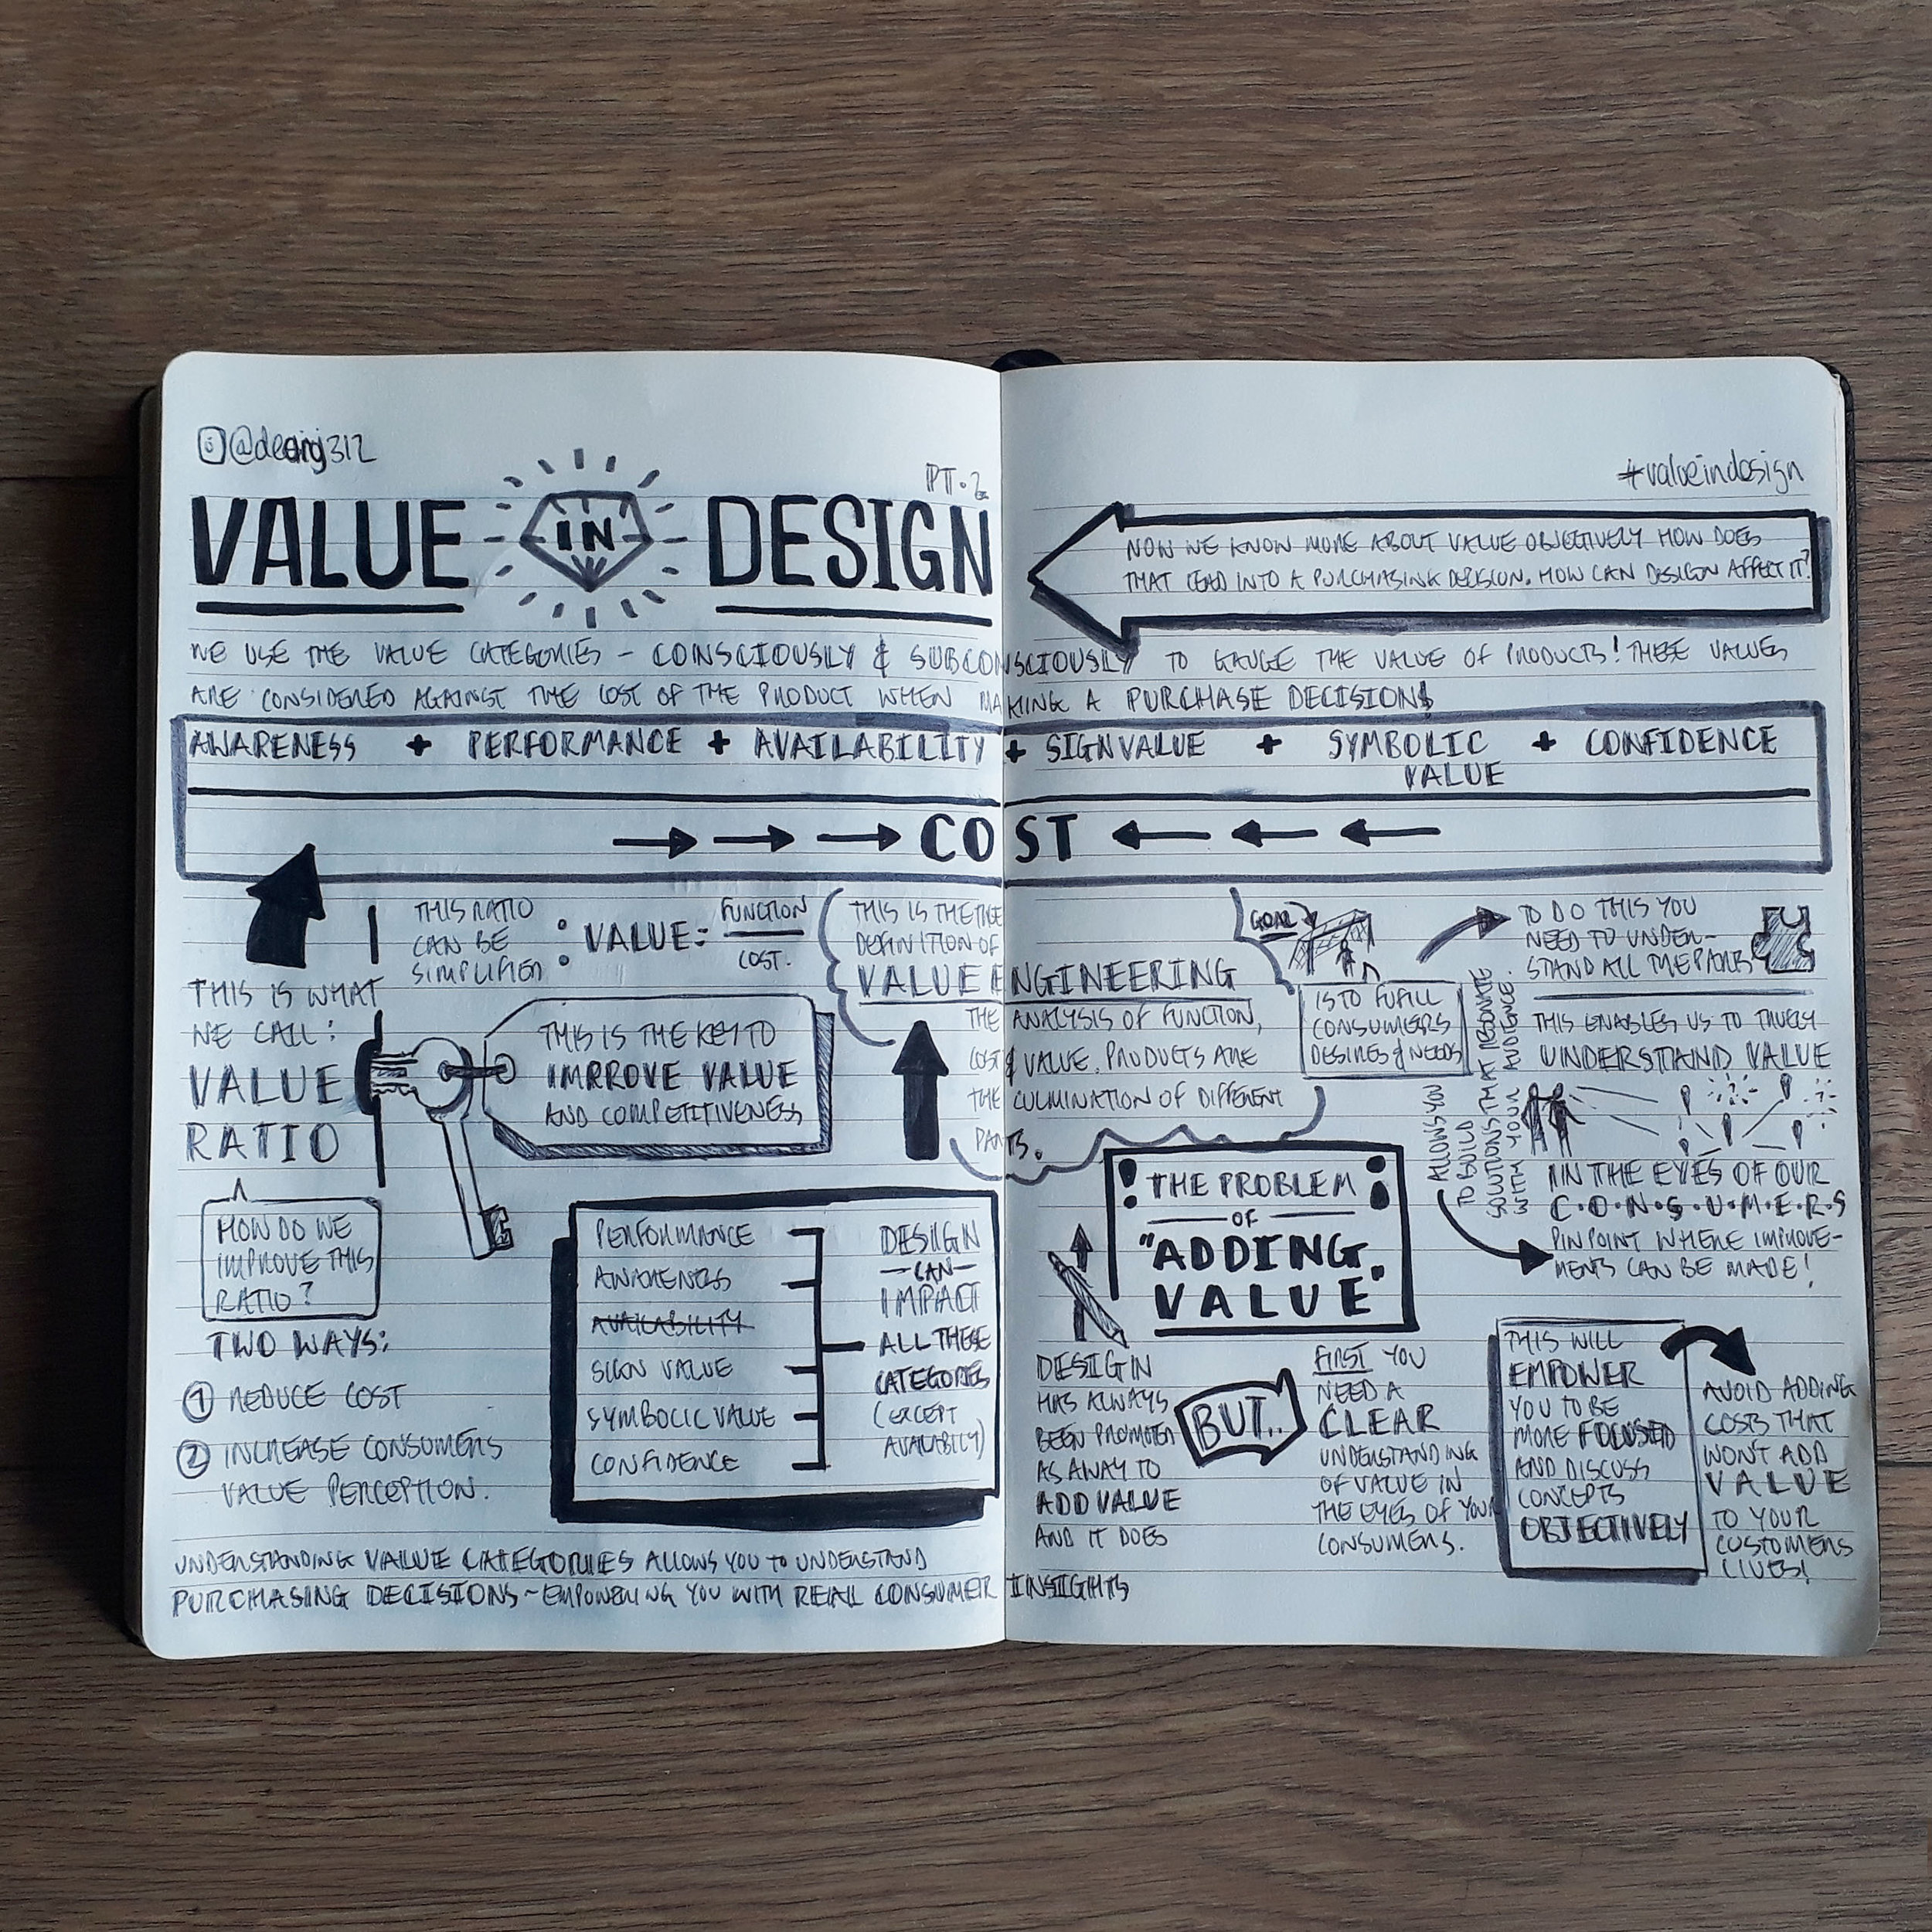 ValueInDesign-Part2.1.jpg